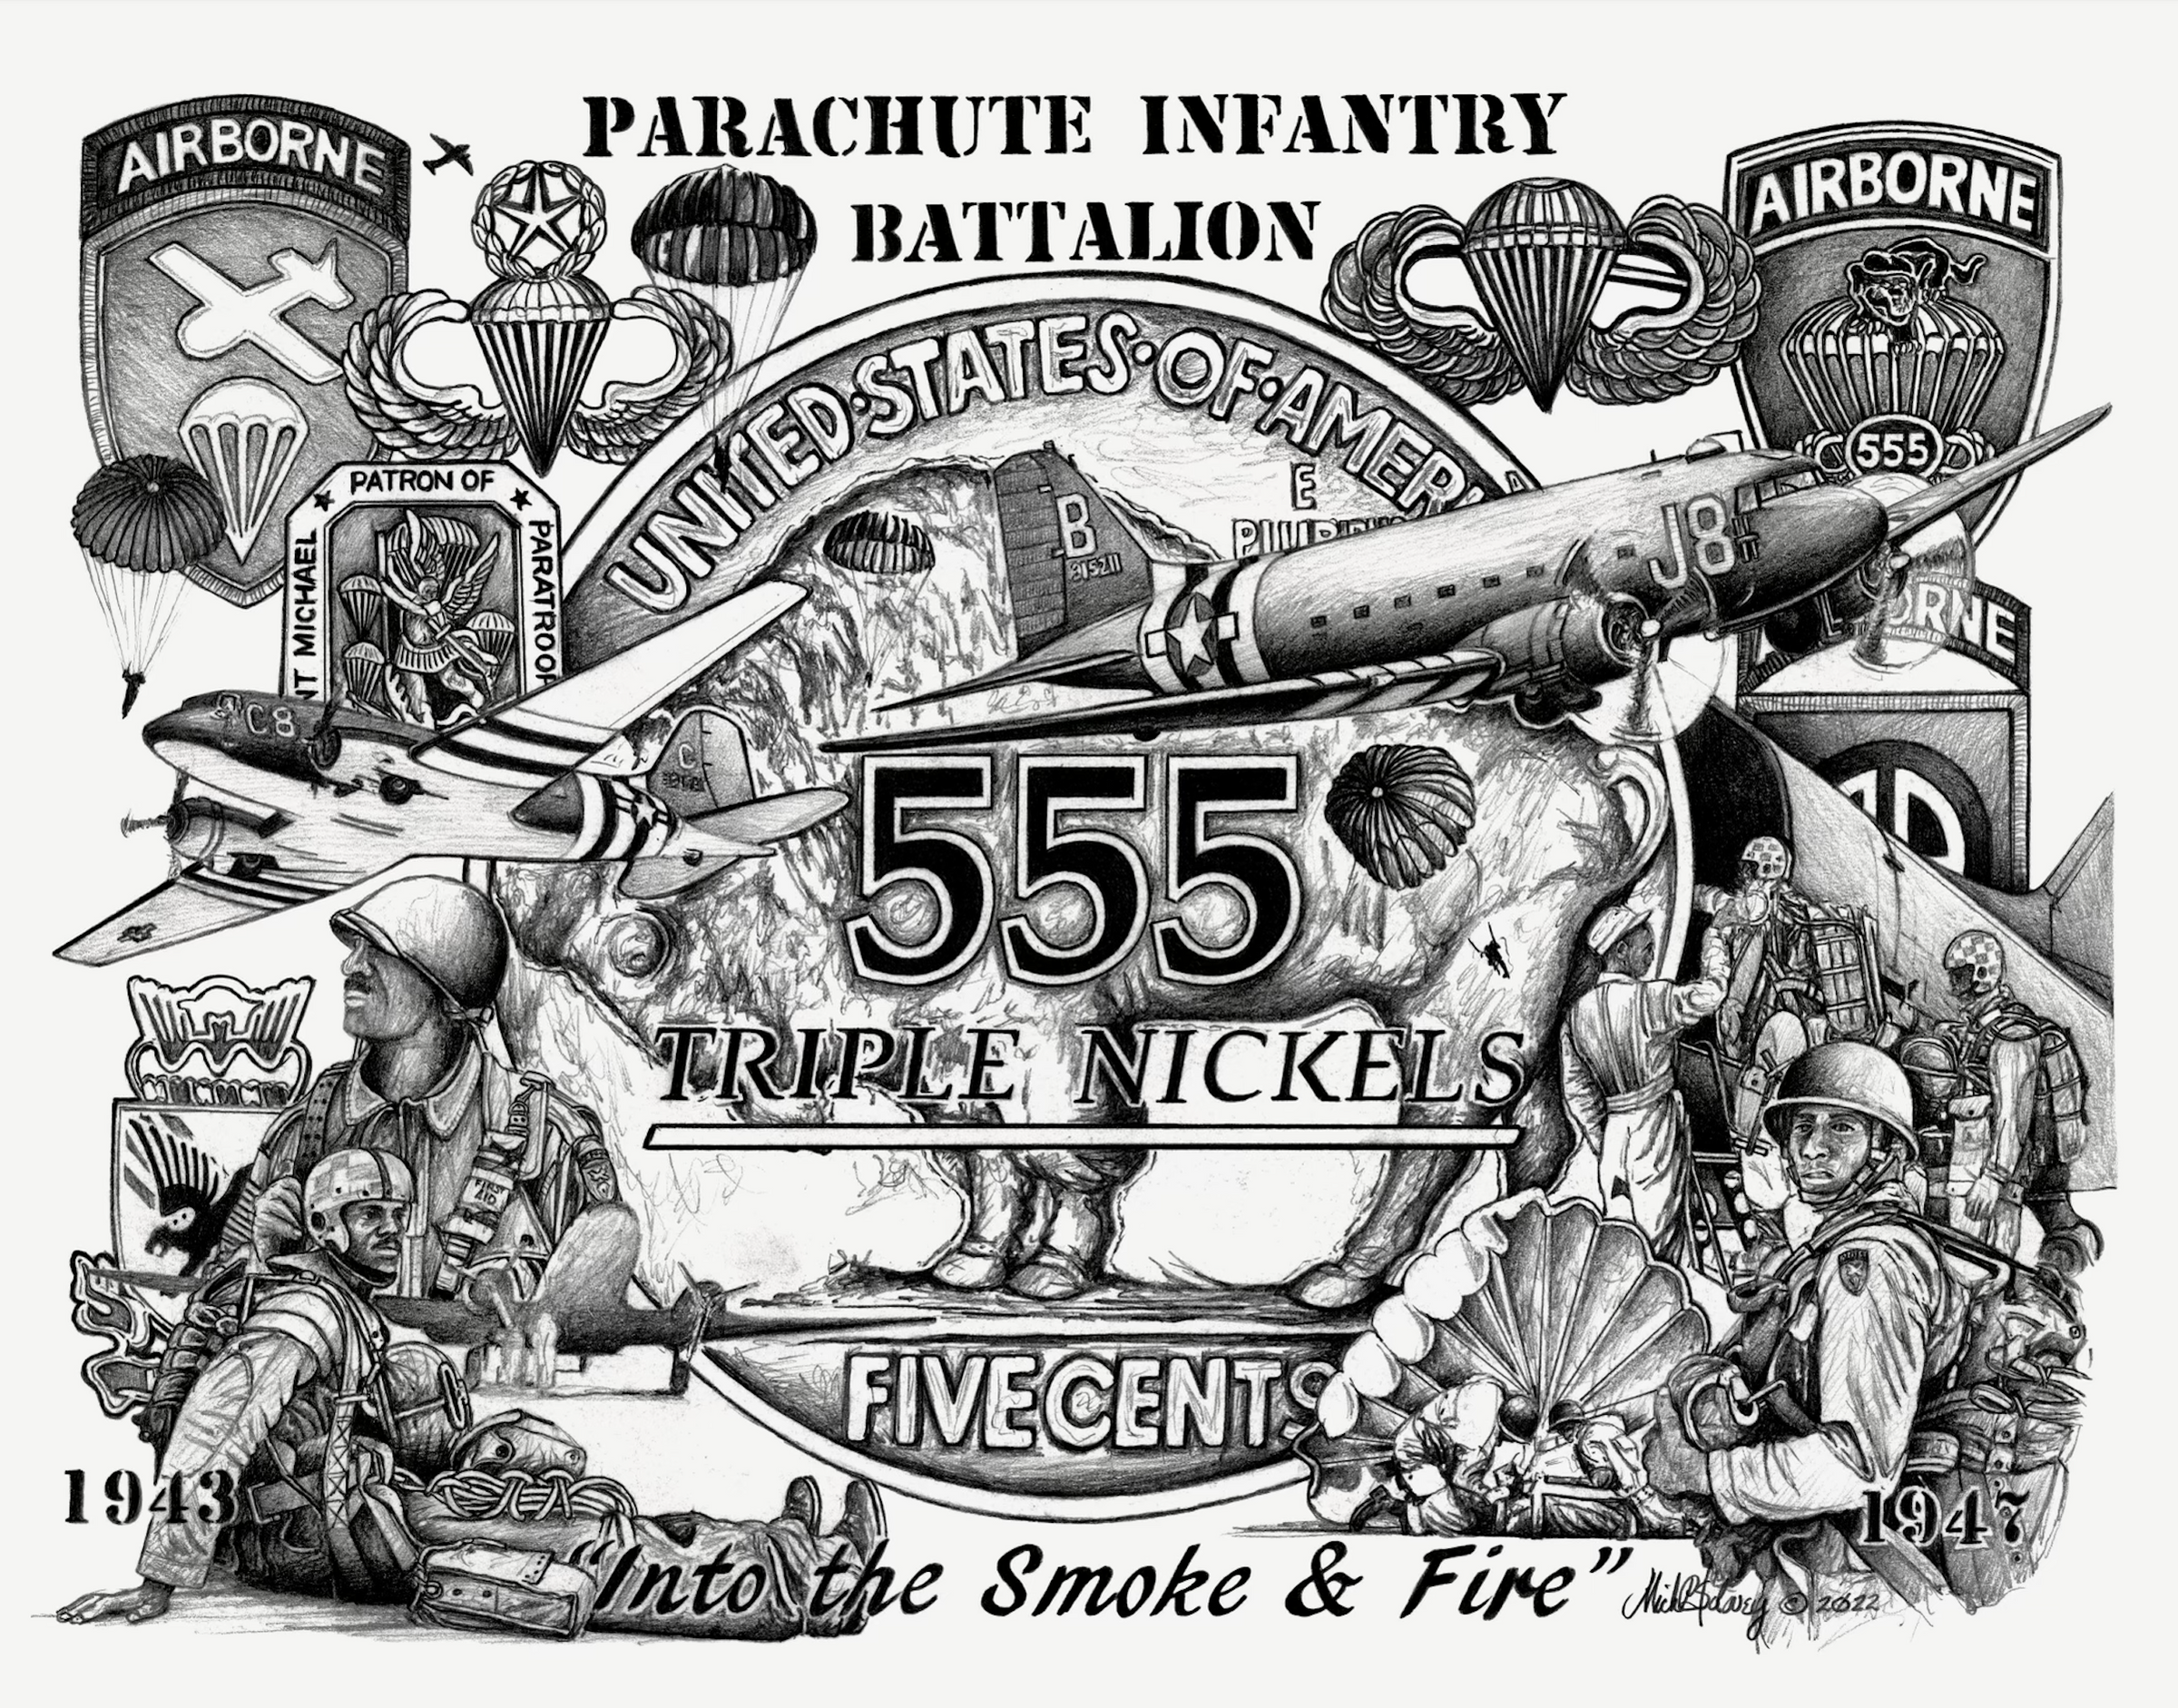 Parachute Infantry Battalion logo